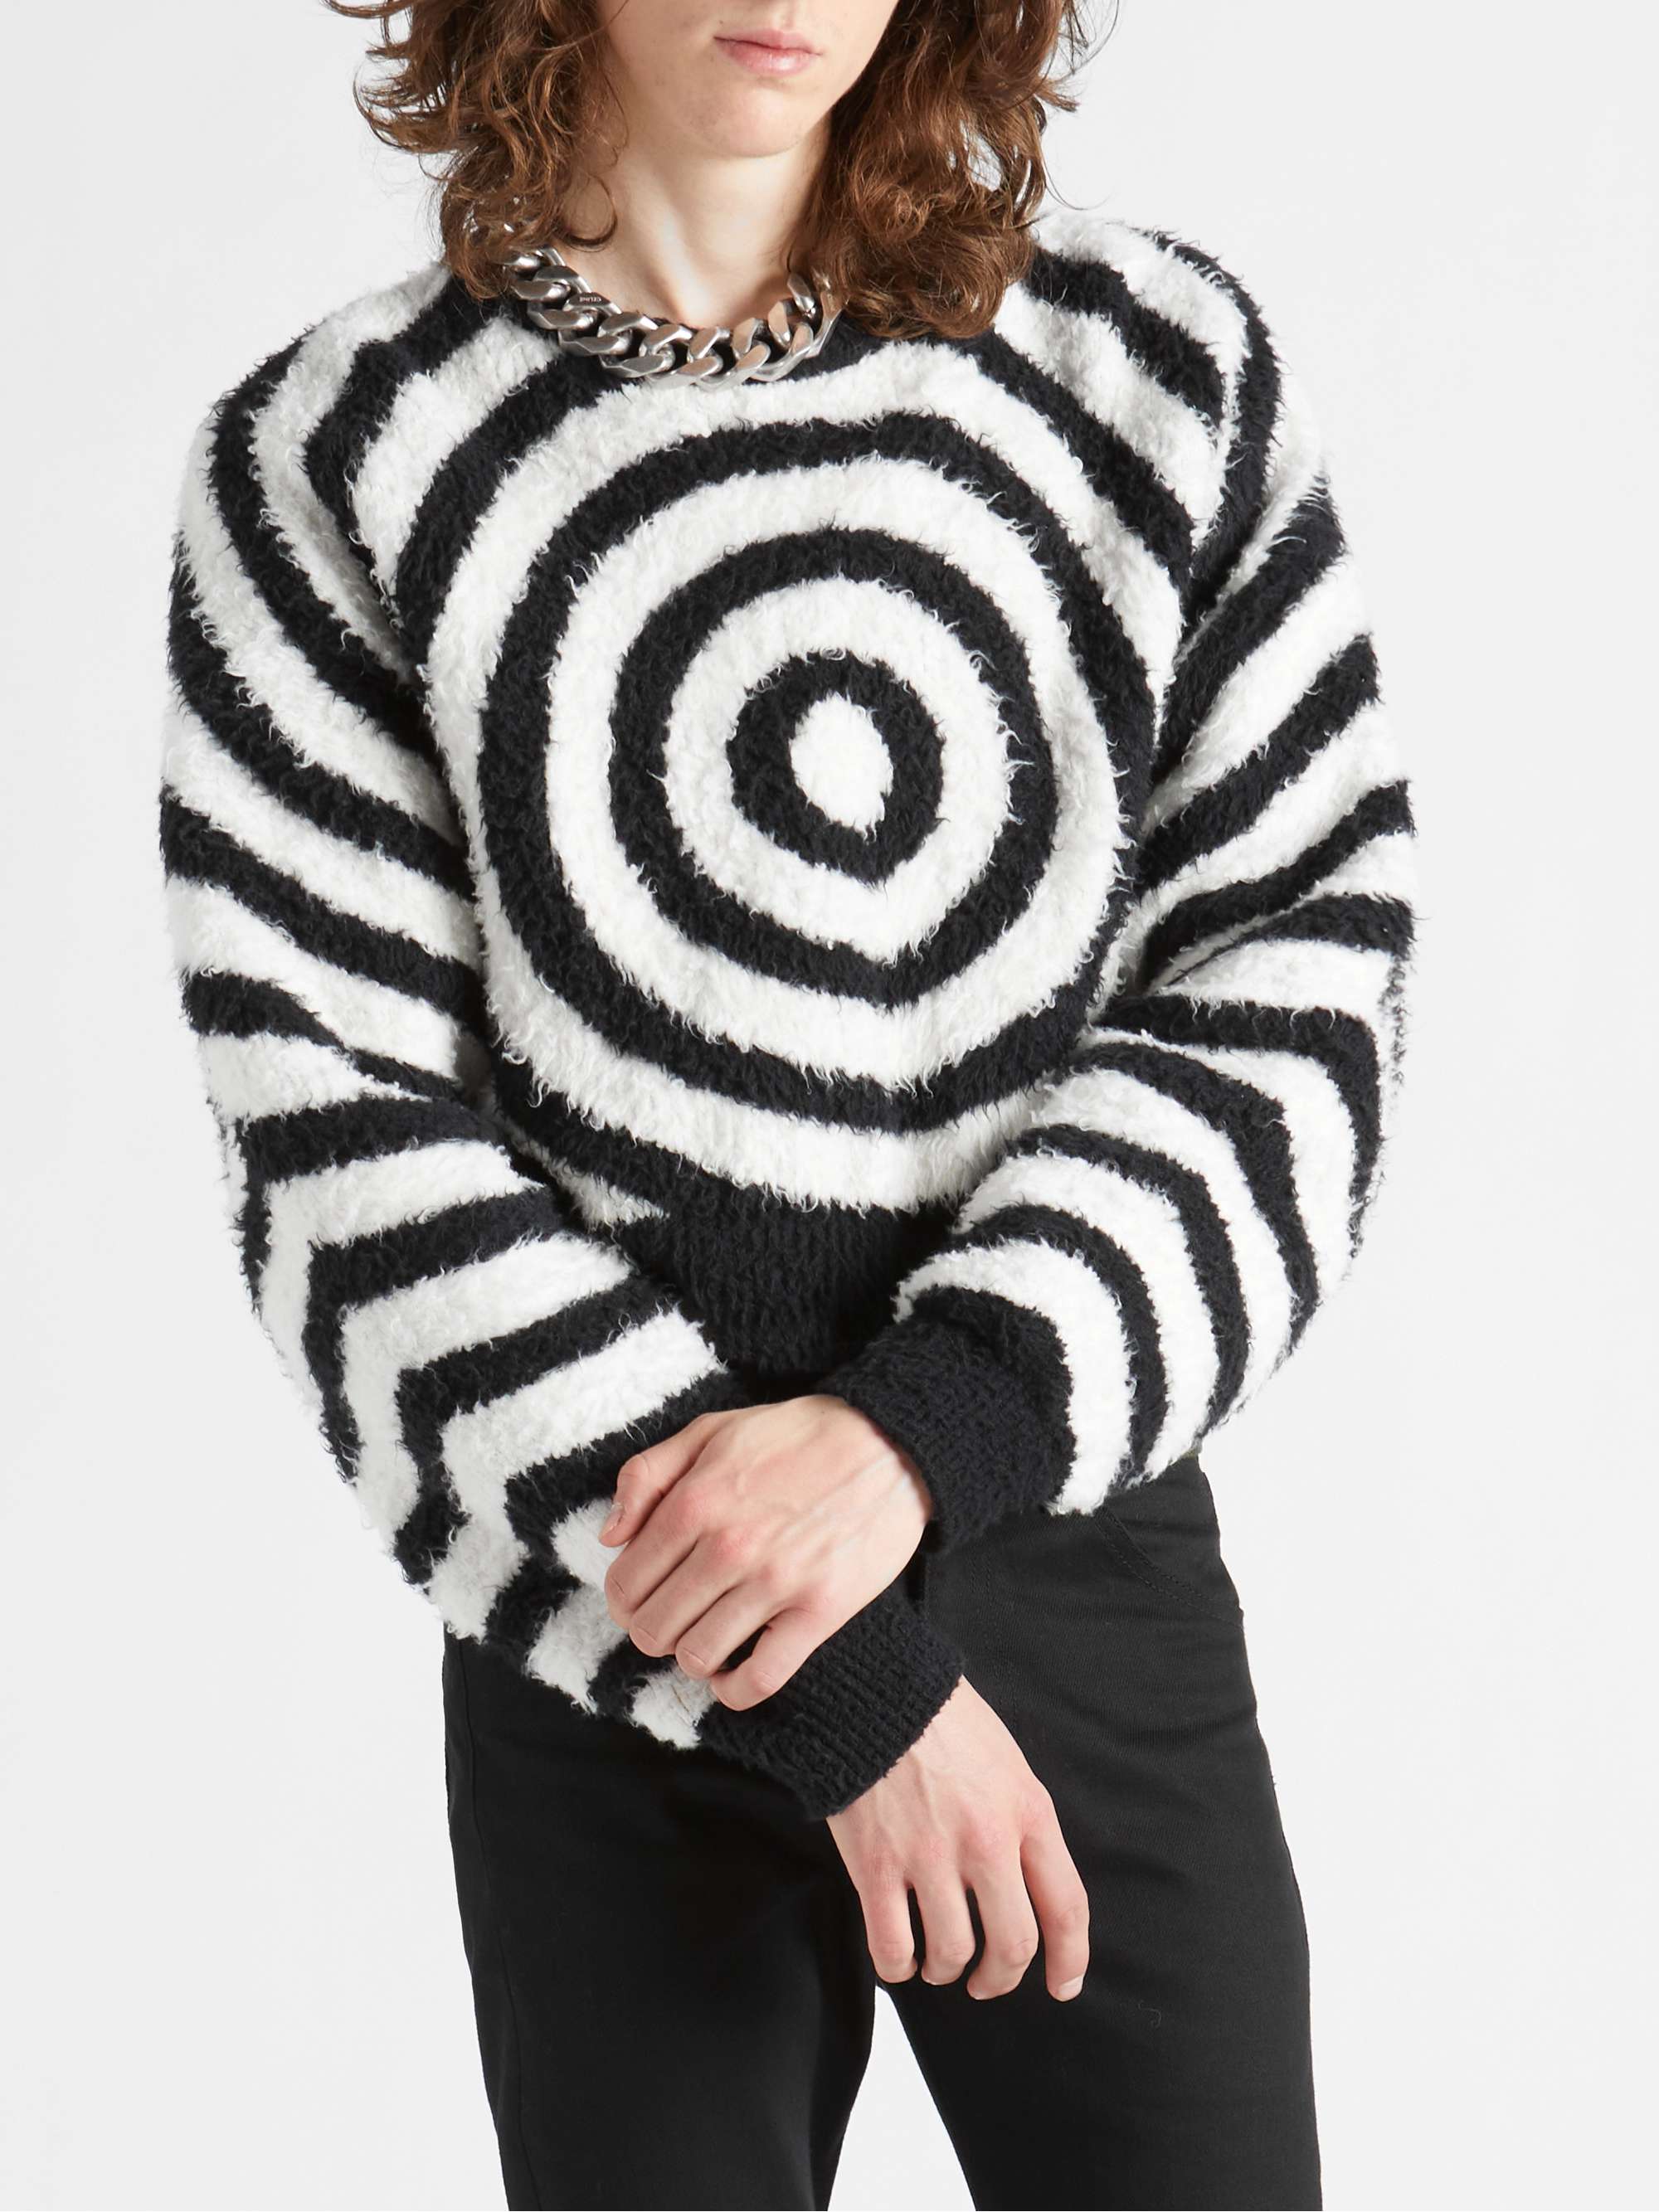 CELINE HOMME Brushed Cotton-Blend Jacquard Sweater